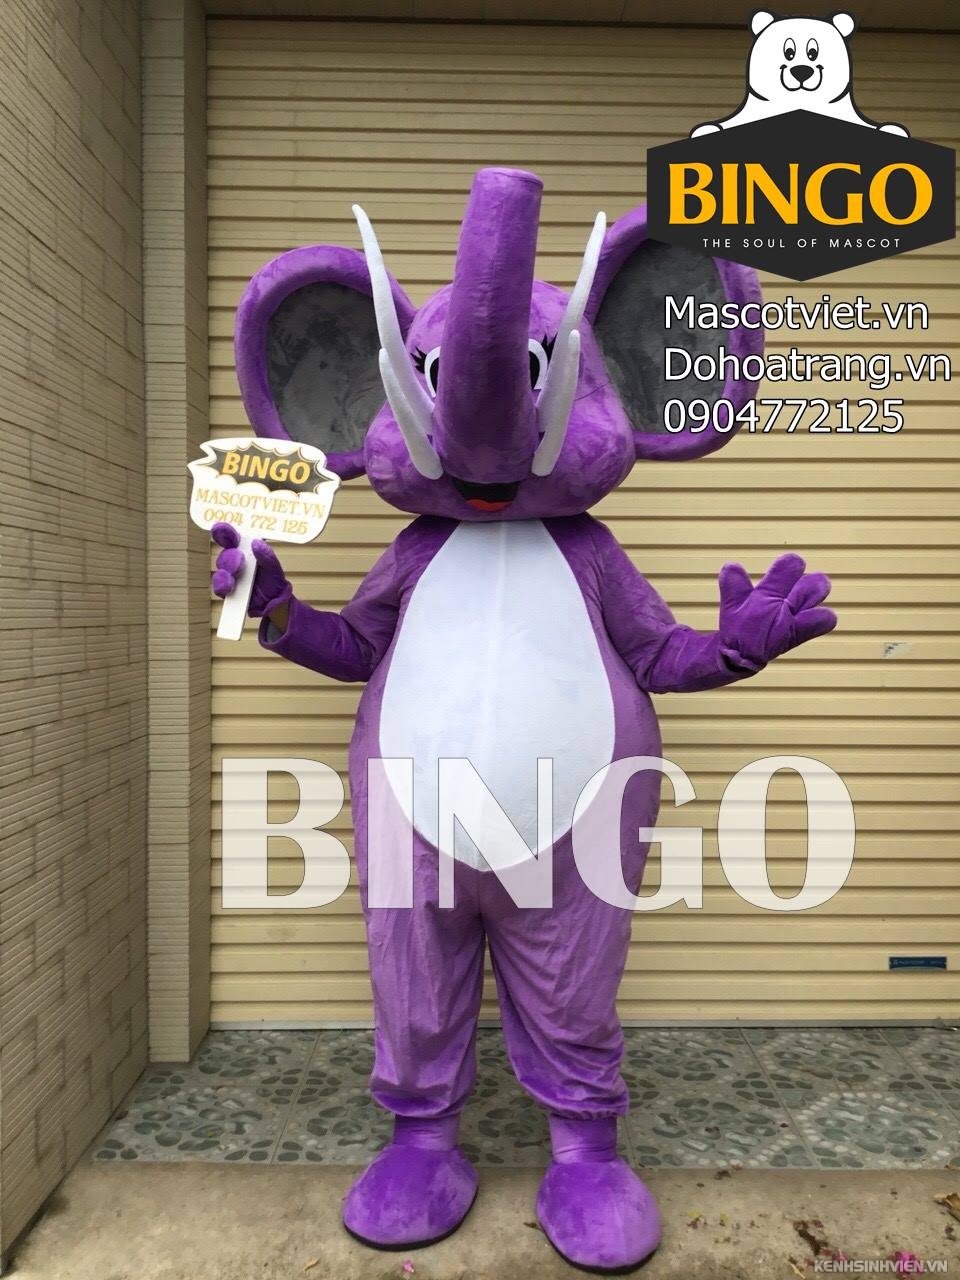 mascot-von-voi-bingo-costumes-0904772125.jpg